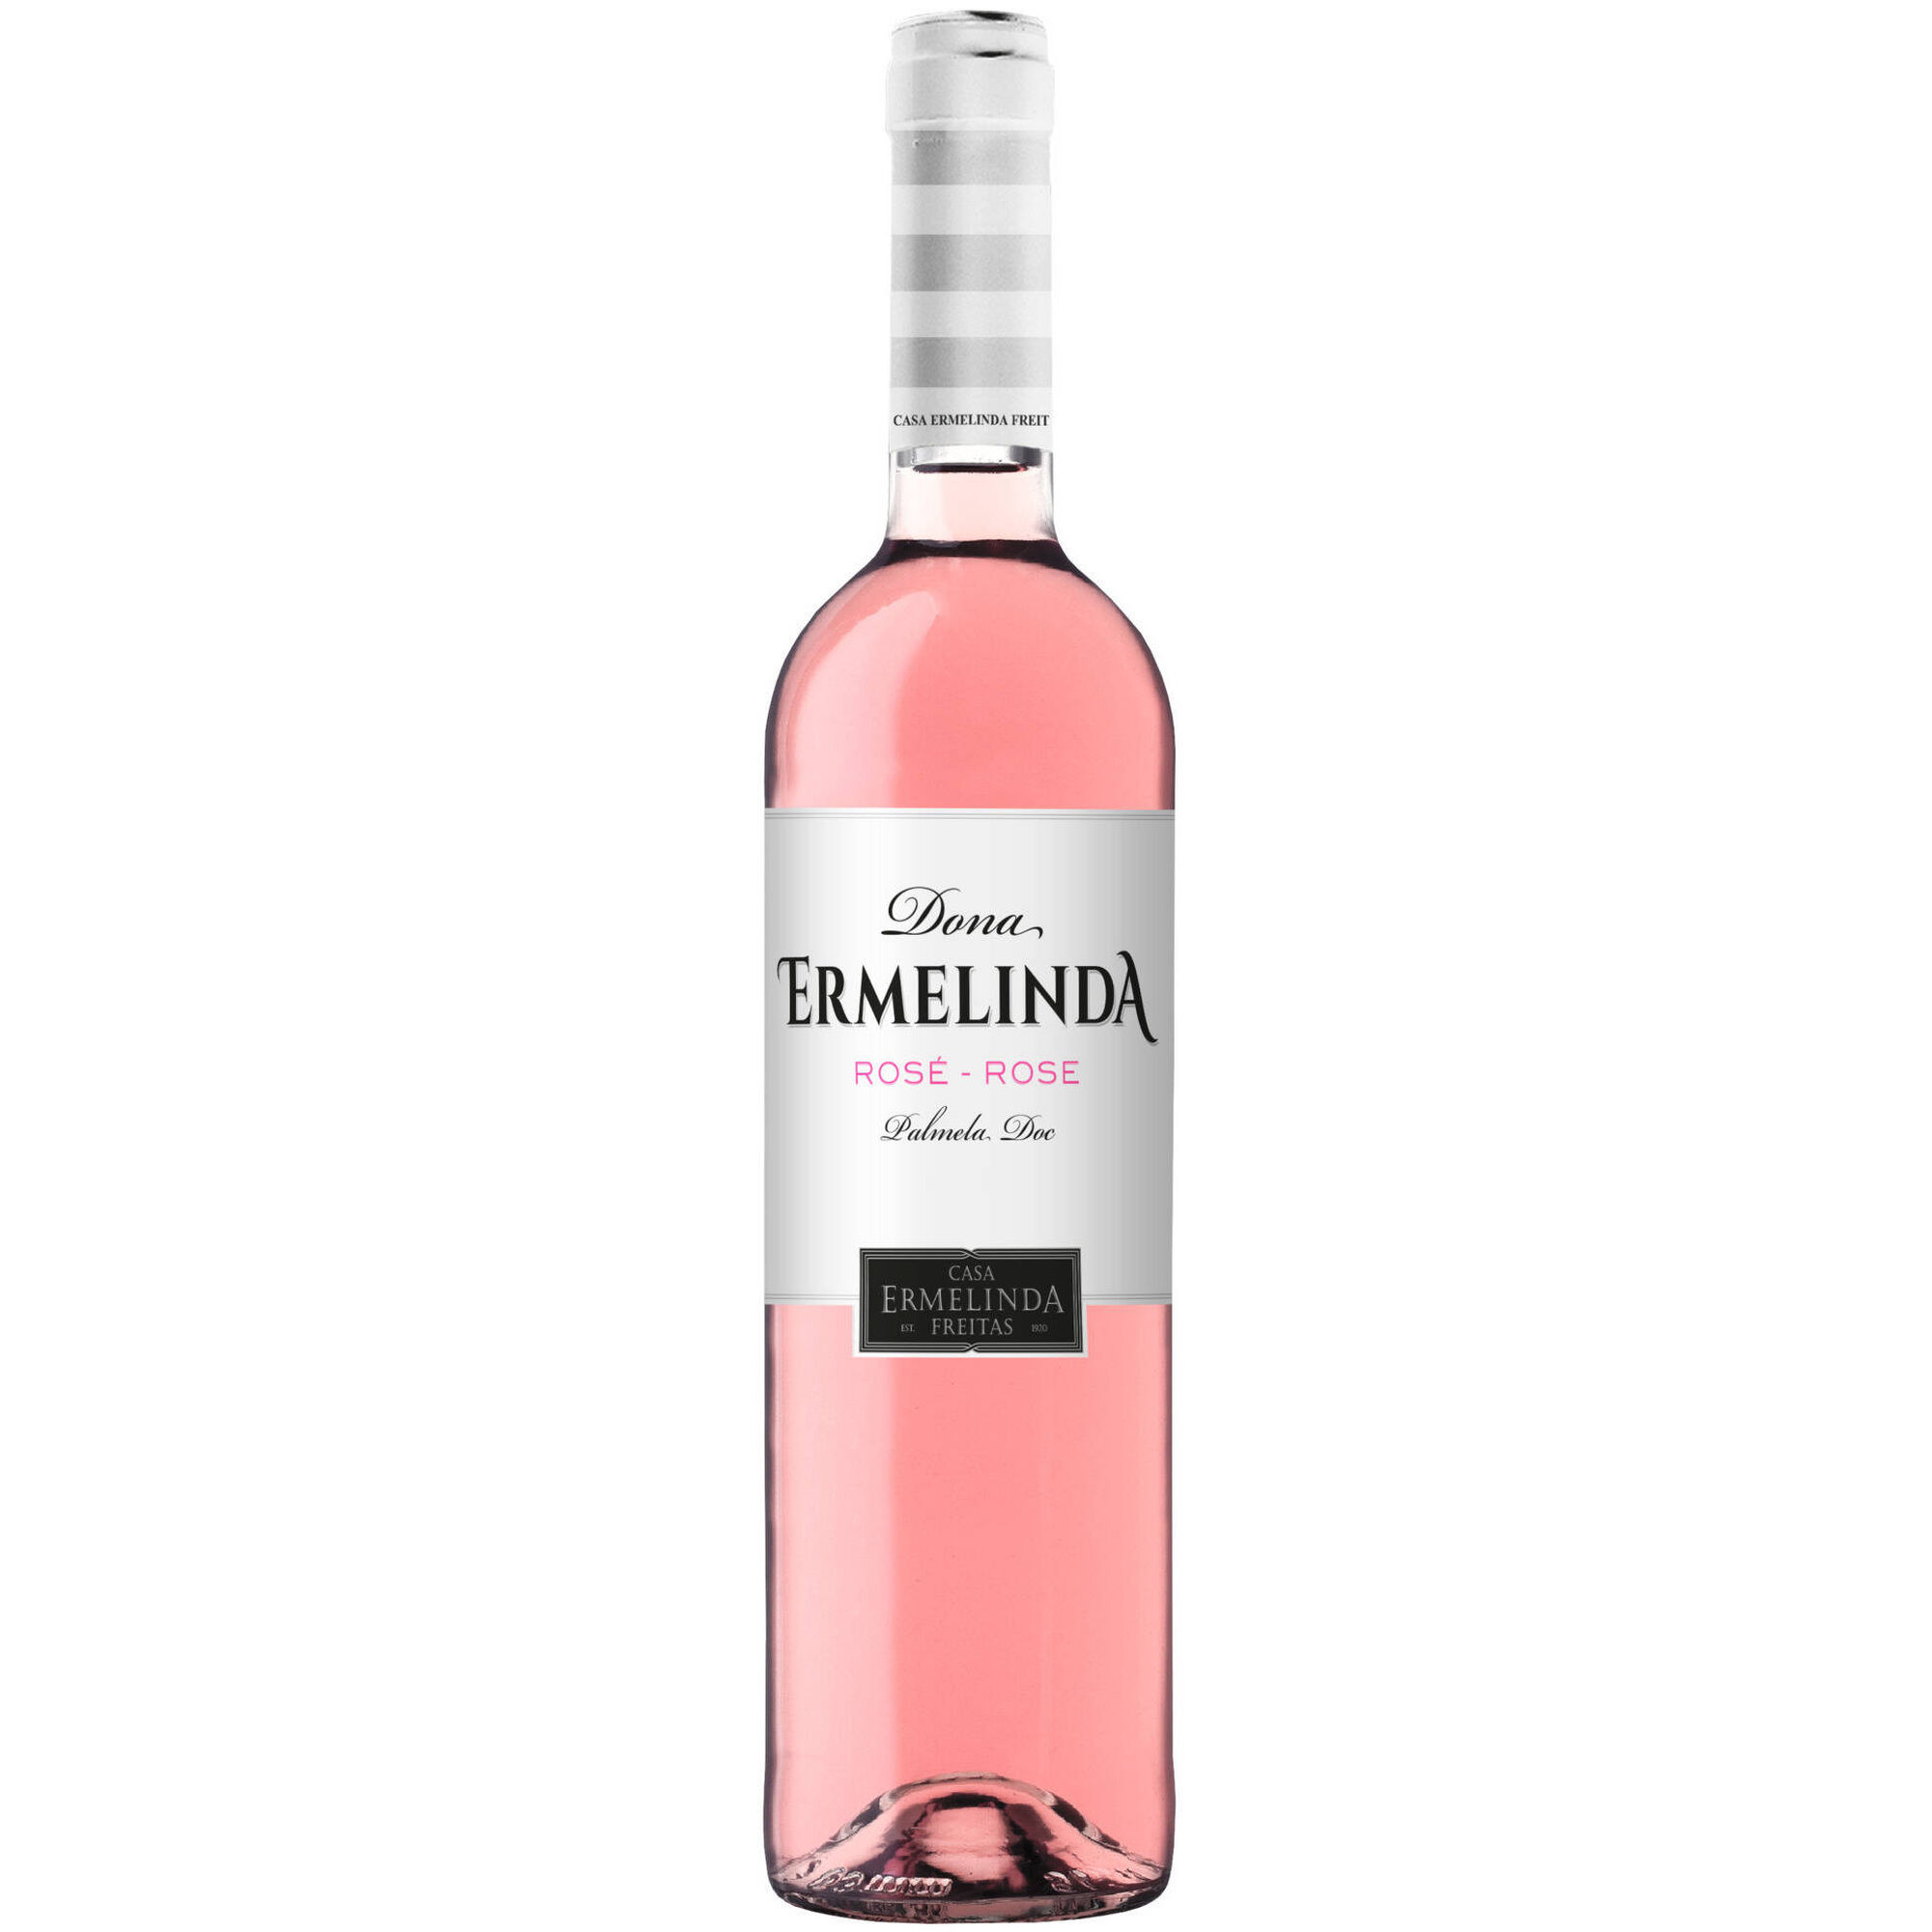 Dona Ermelinda DOC Palmela Vinho Rosé